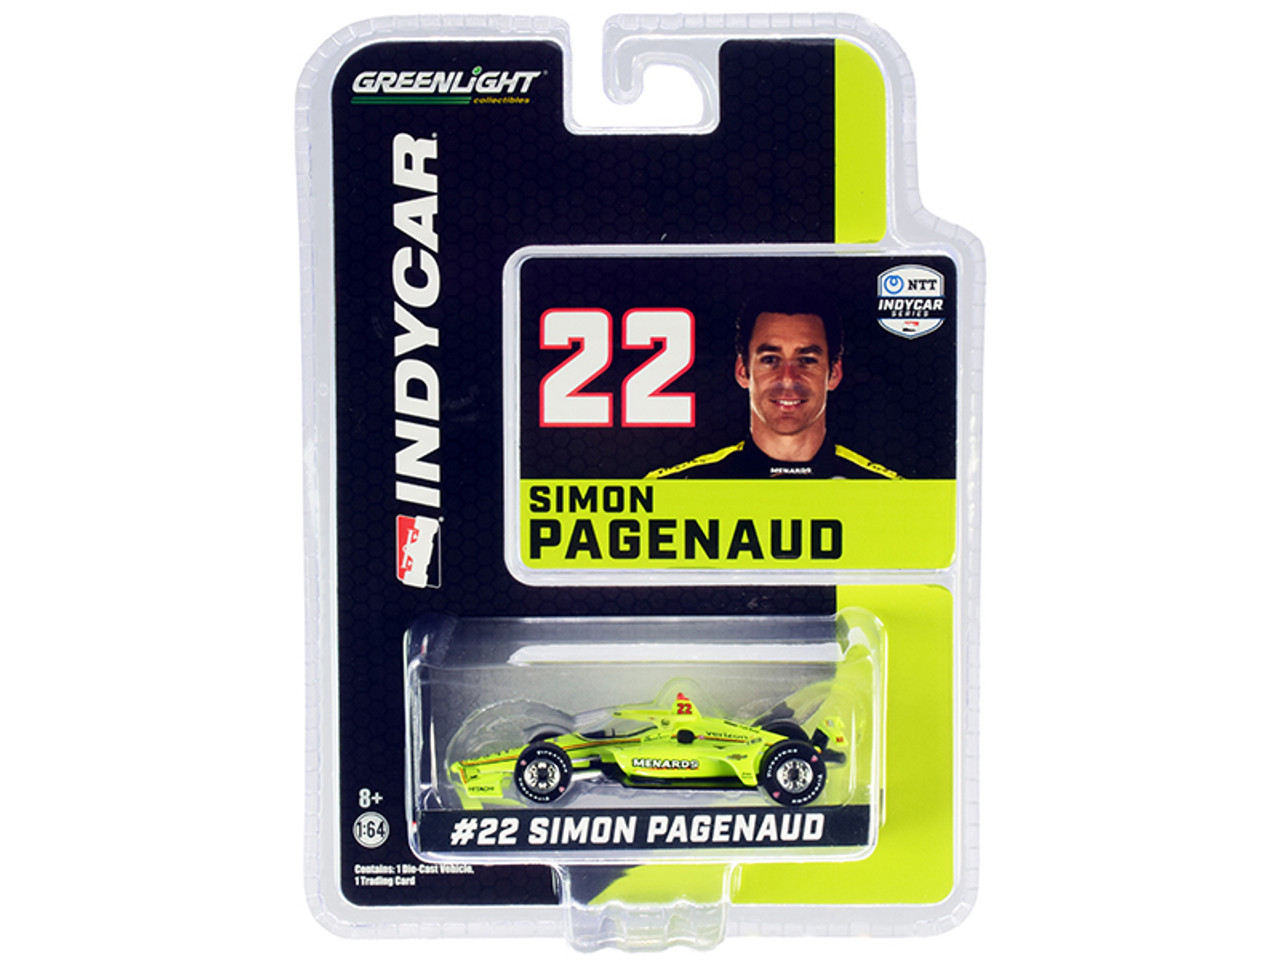 Dallara IndyCar #22 Simon Pagenaud "Menards" Team Penske "NTT IndyCar Series" (2020) 1/64 Diecast Model Car by Greenlight